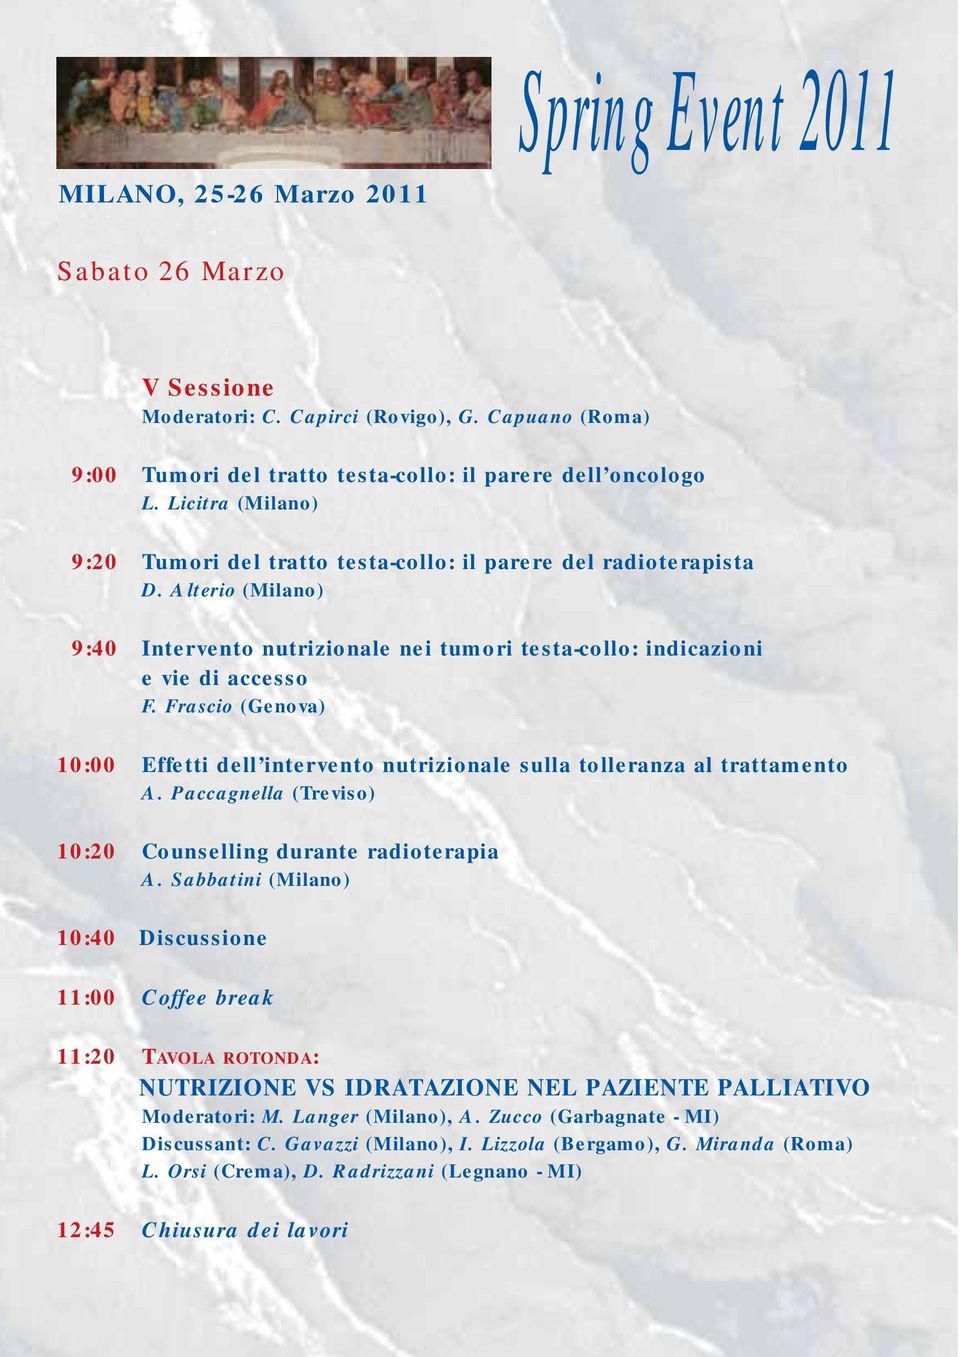 Frascio (Genova) 10:00 Effetti dell intervento nutrizionale sulla tolleranza al trattamento A. Paccagnella (Treviso) 10:20 Counselling durante radioterapia A.